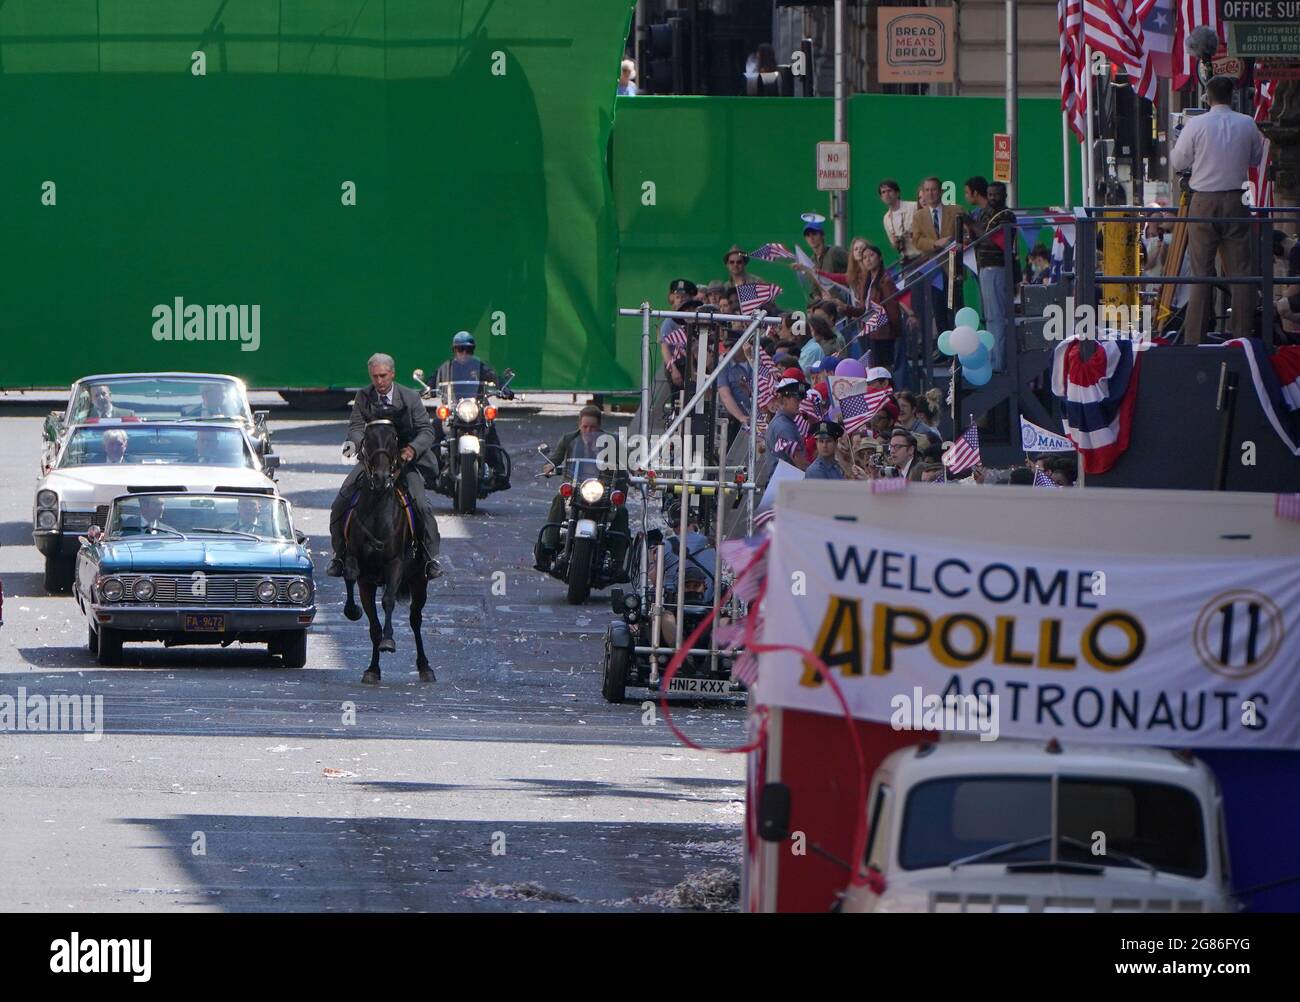 Un doble cuerpo para Harrison Ford y Boyd Holbrook se ven en un caballo y moto durante una escena de desfile en St Vincent Street en el centro de la ciudad de Glasgow durante el rodaje de lo que se cree que es la nueva película de Indiana Jones 5 protagonizada por Harrison Ford. Fecha de la foto: Sábado 17 de julio de 2021. Foto de stock